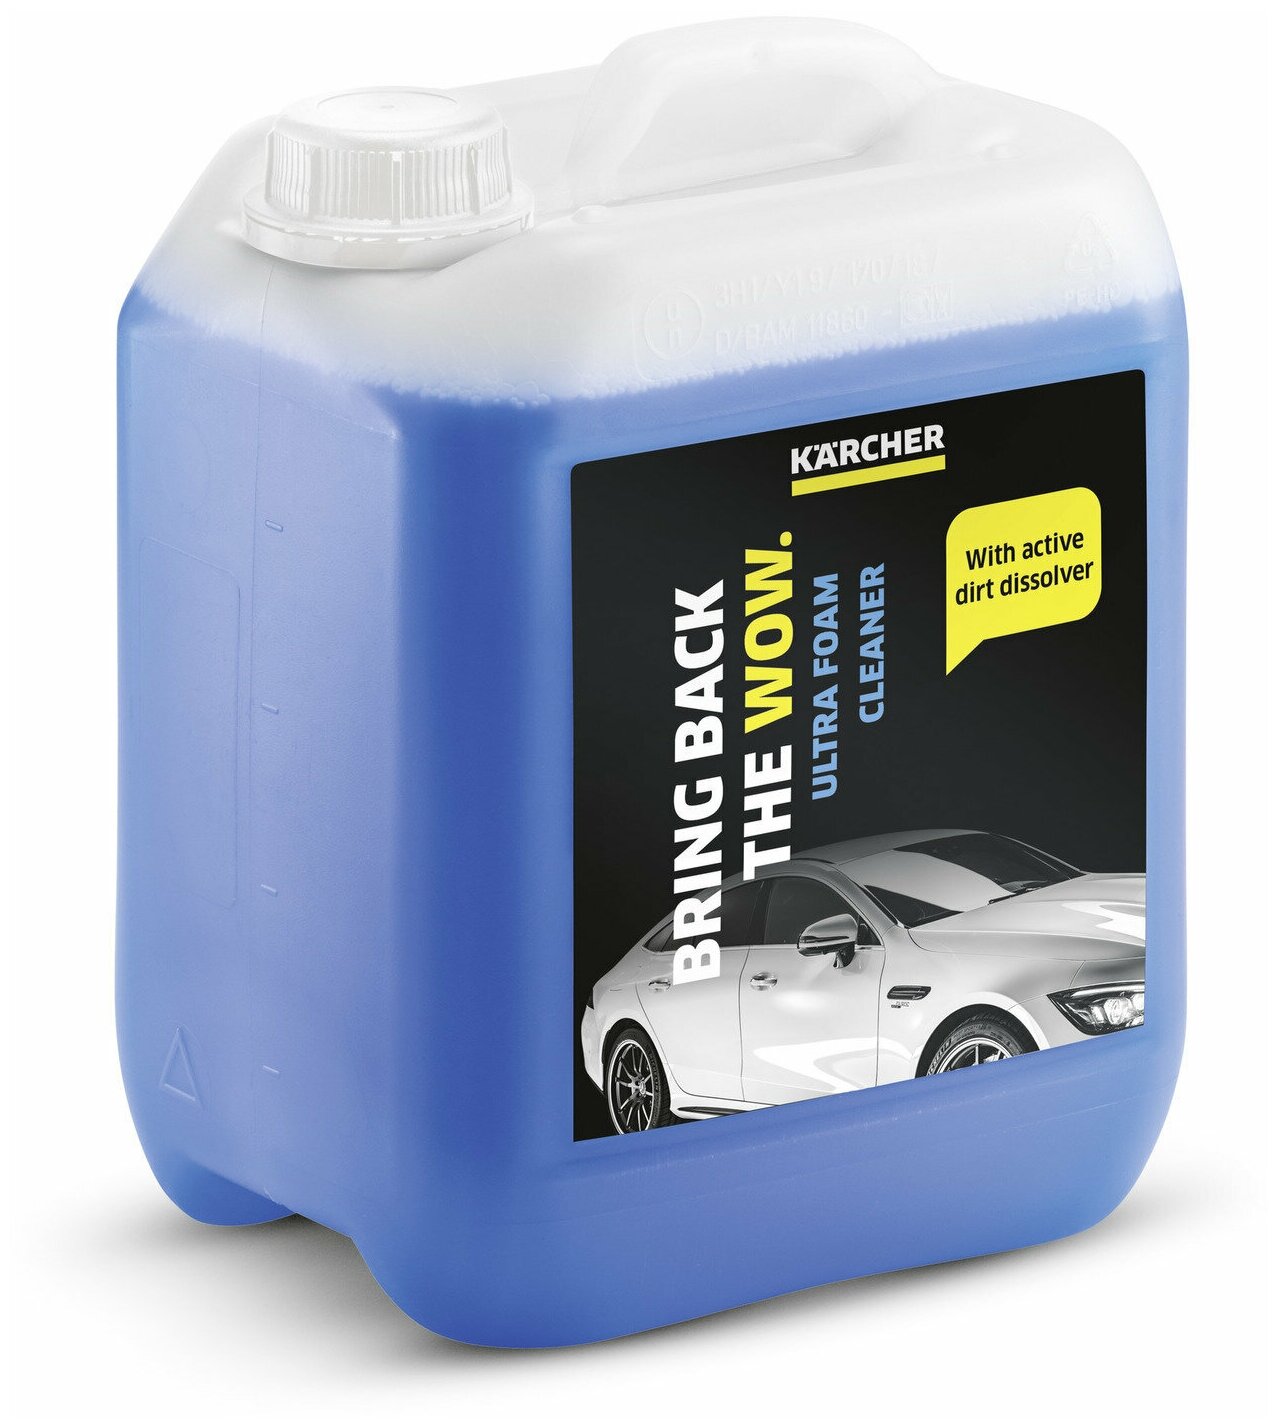 Чистящее средство для пенной мойки автомобиля Karcher RM 527 6.295-603.0, для моек высокого давления K 2 - K 7, 5 л